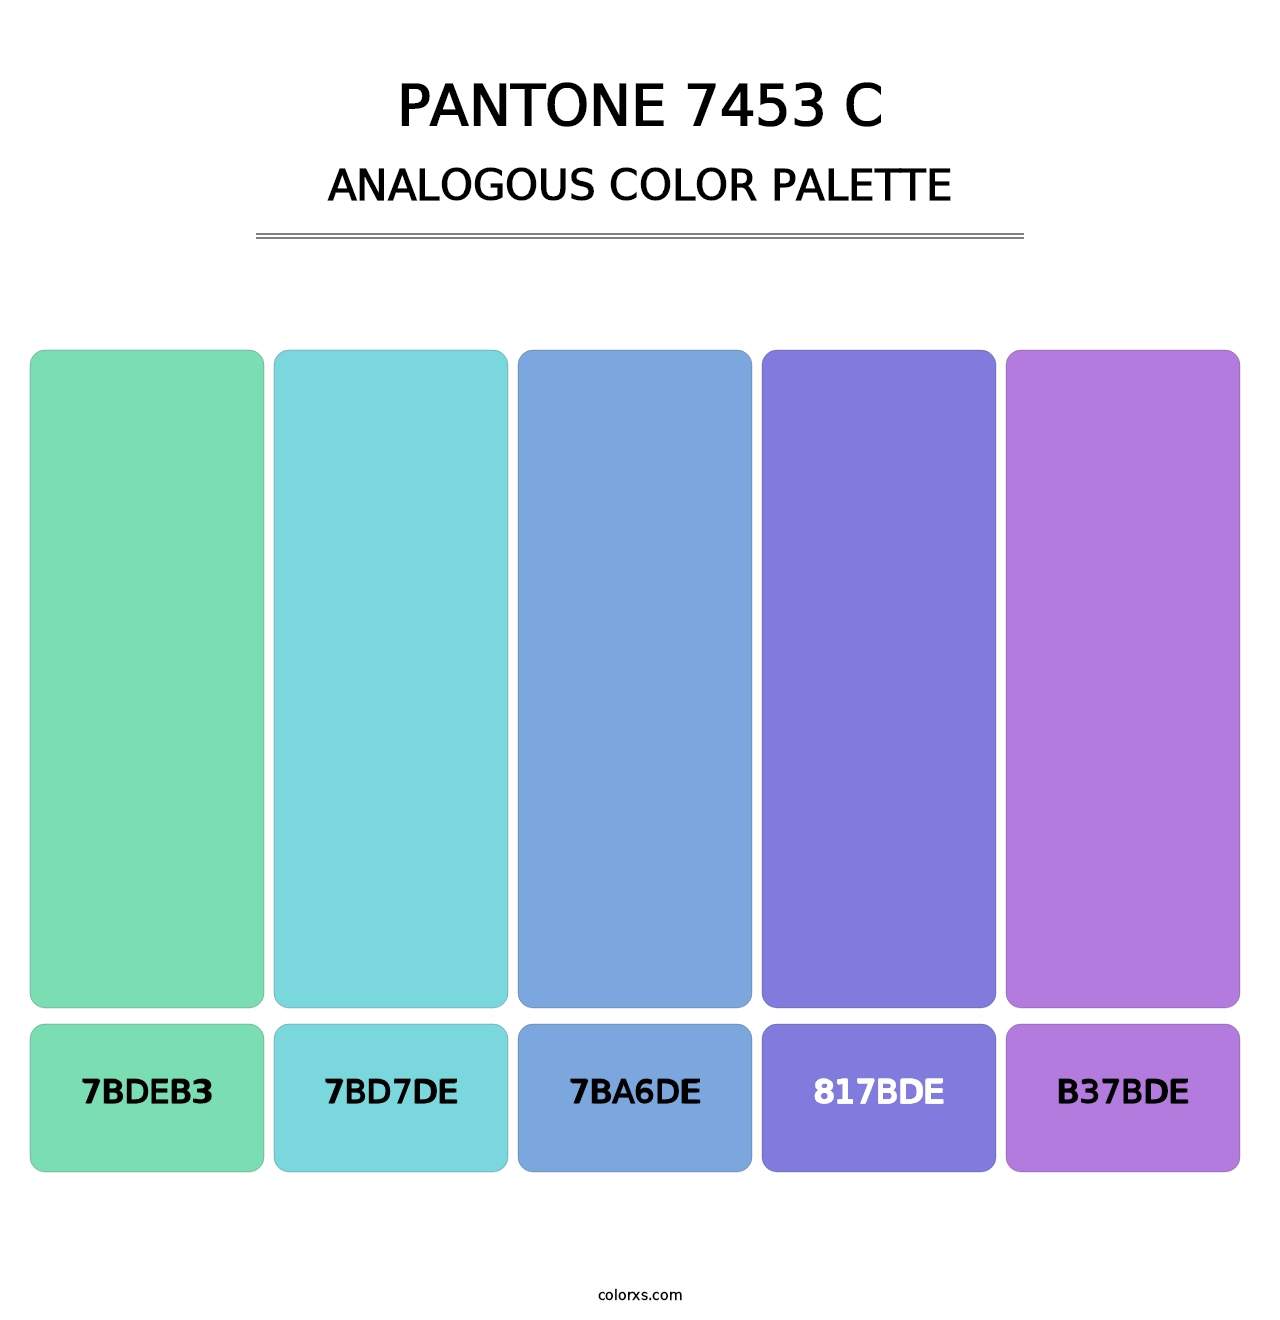 PANTONE 7453 C - Analogous Color Palette